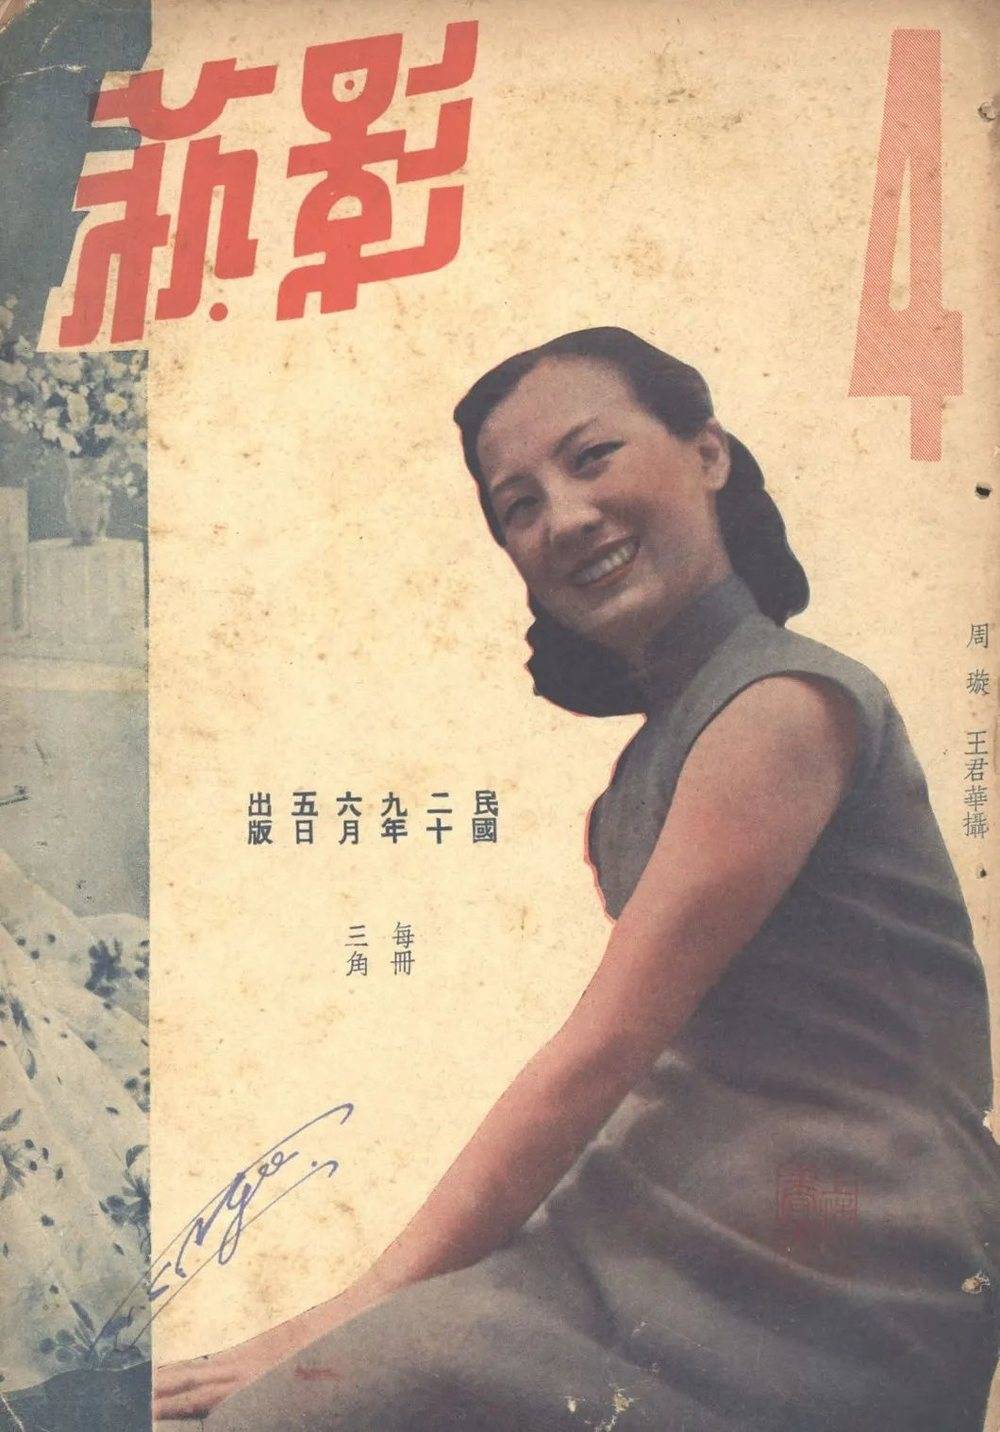 ■《中华画报》、1936年《维纳丝》周璇封面、1939年《电影》谈瑛封面、1940《影艺》周璇封面<br>